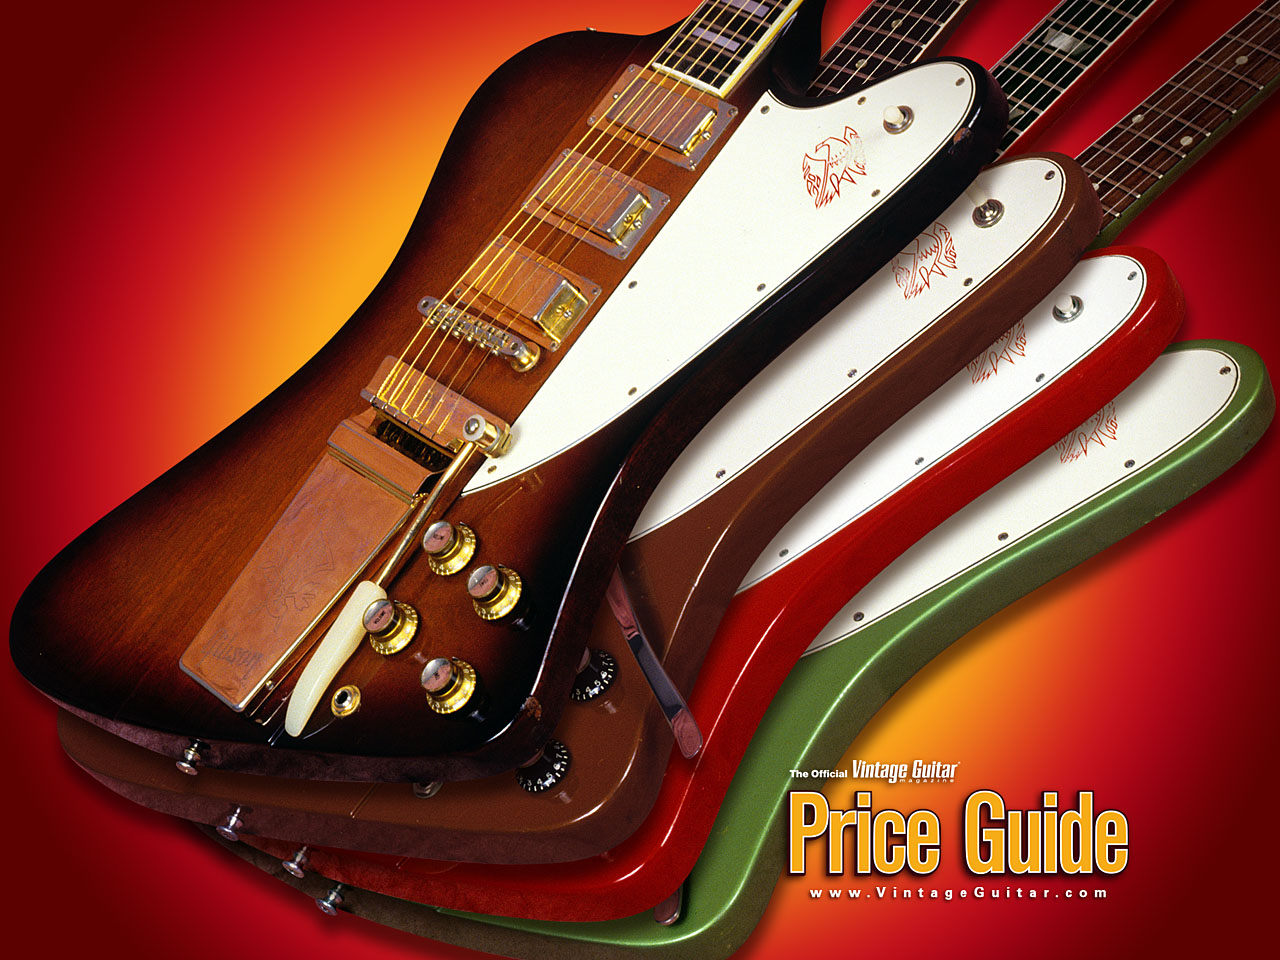 Gibson Firebird X